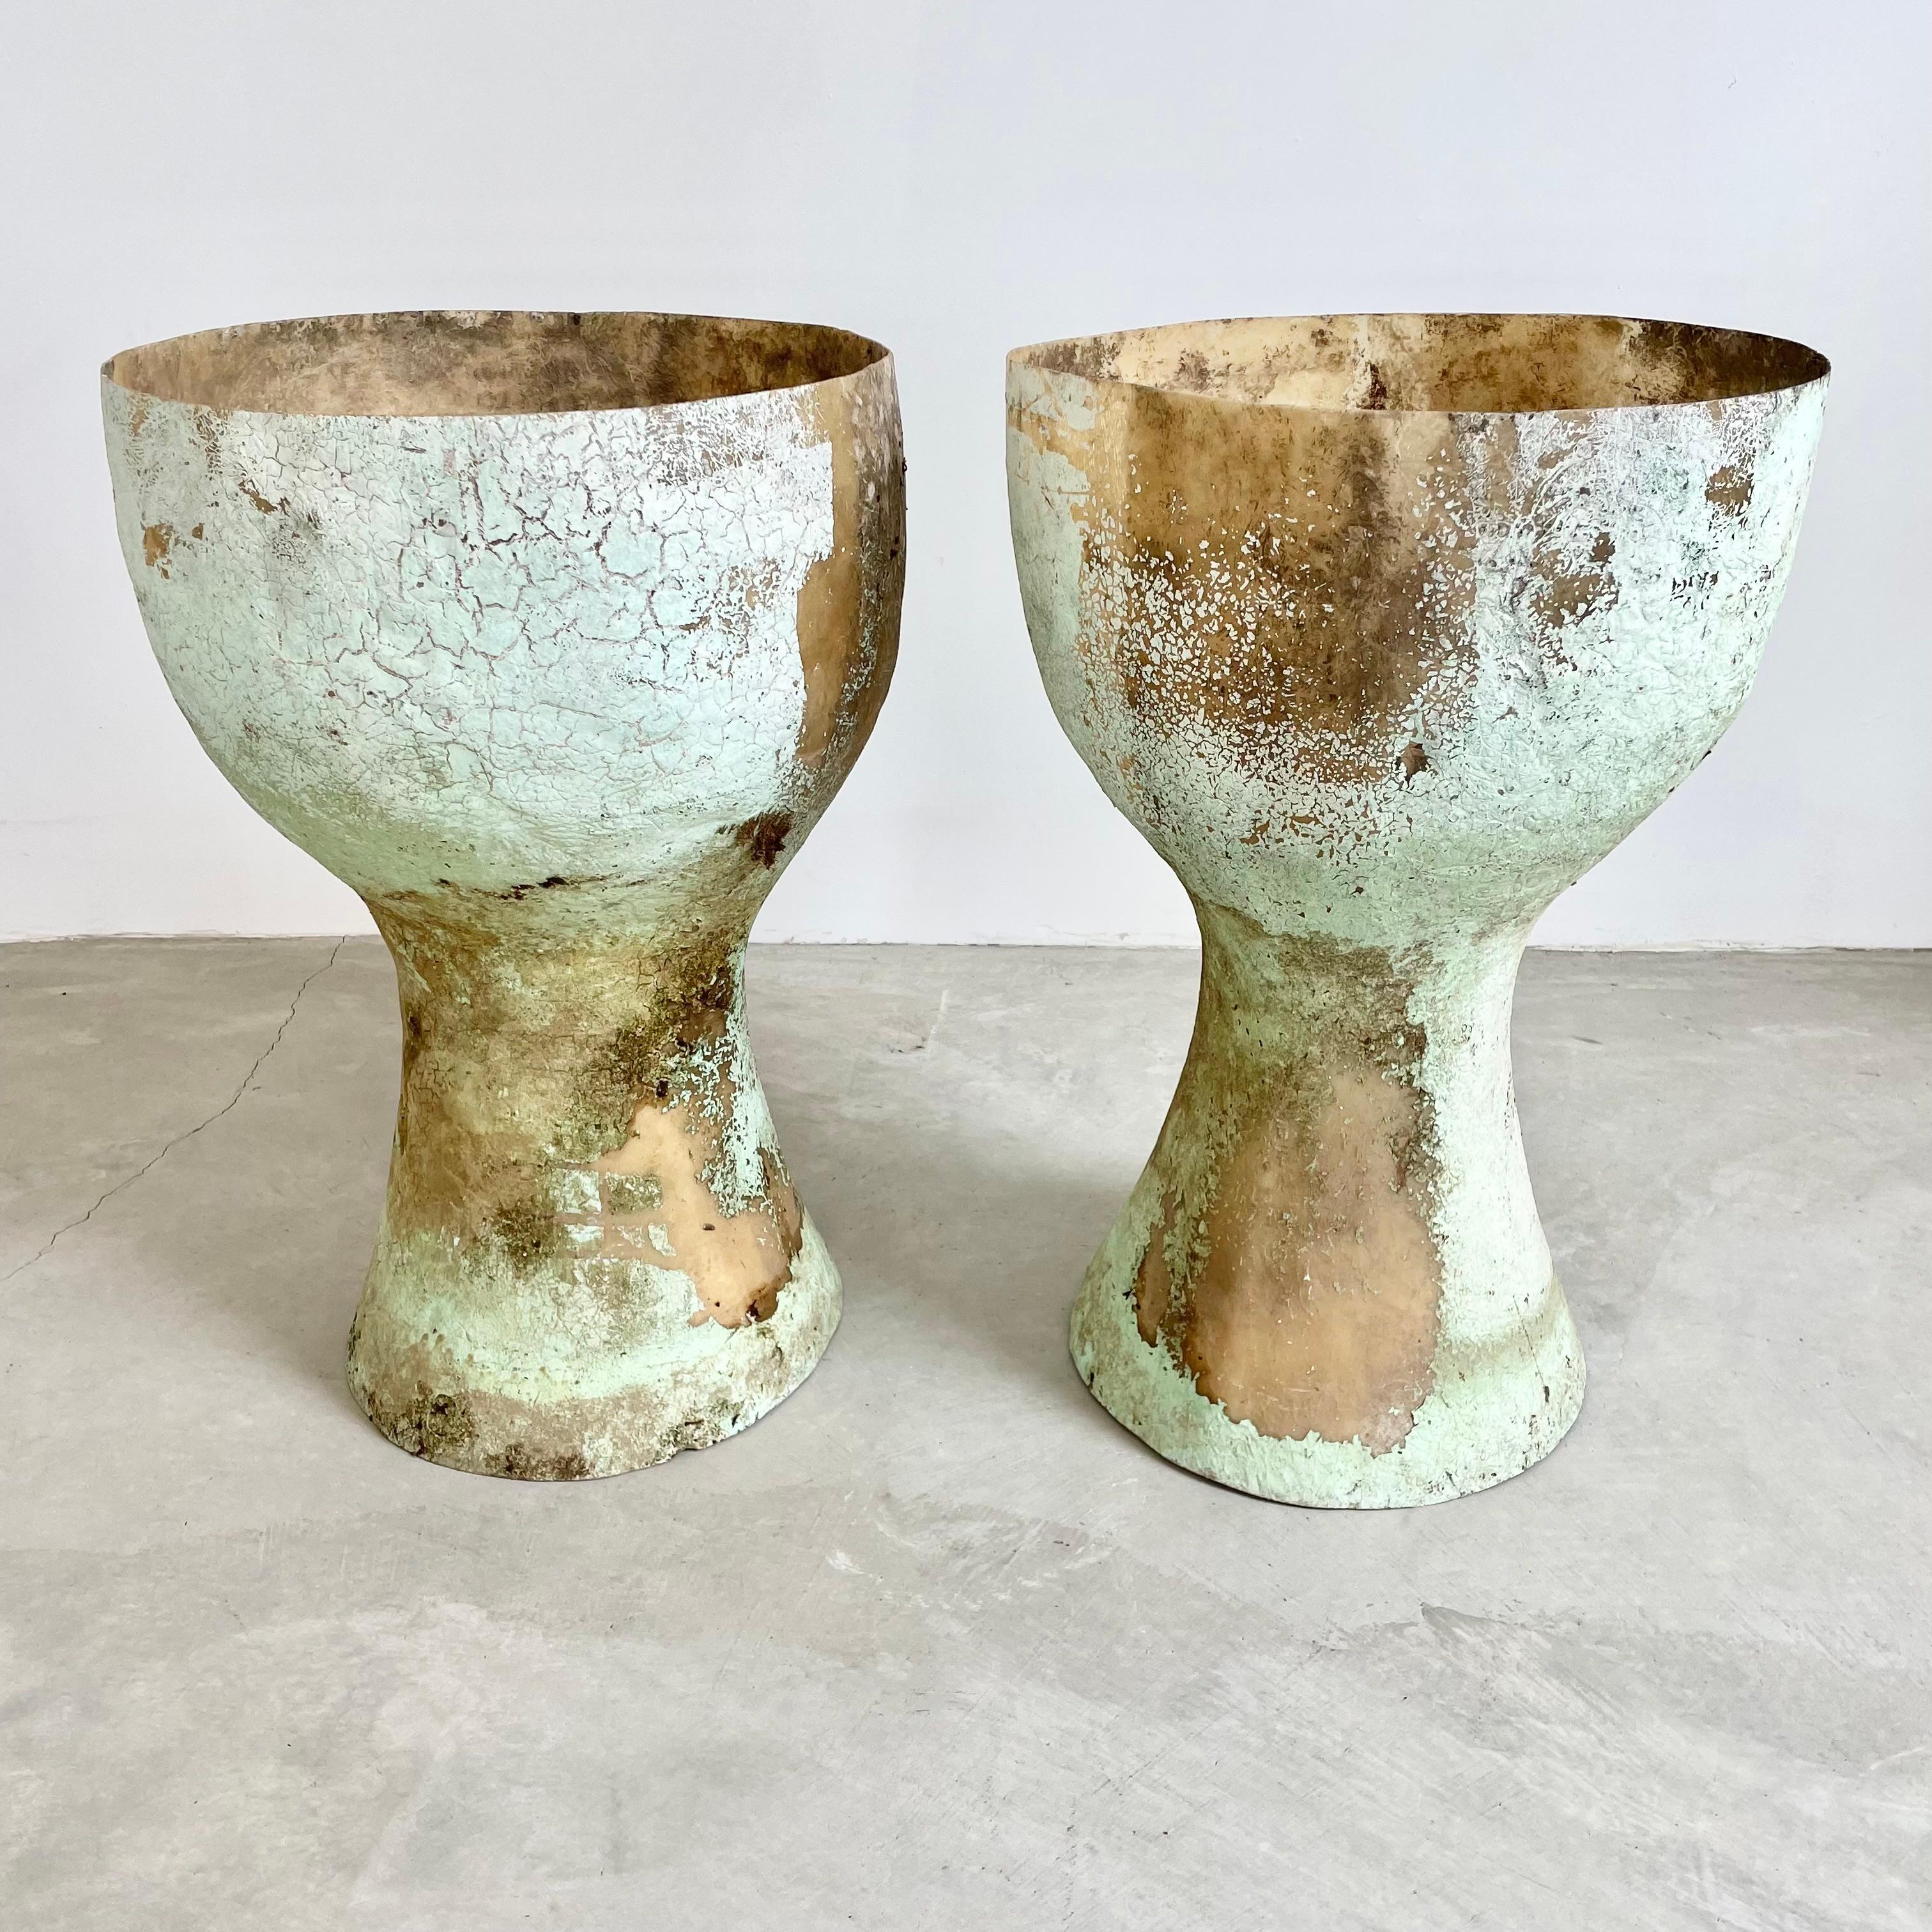 Wunderschönes Set monumentaler Fiberglasvasen aus Belgien, ca. 1960er Jahre. Beide Vasen sind mintgrün bemalt und haben eine unterschiedliche, aber ebenso einzigartige Patina. Erstaunliche Präsenz. Da diese Pflanzgefäße sehr leicht sind und keinen